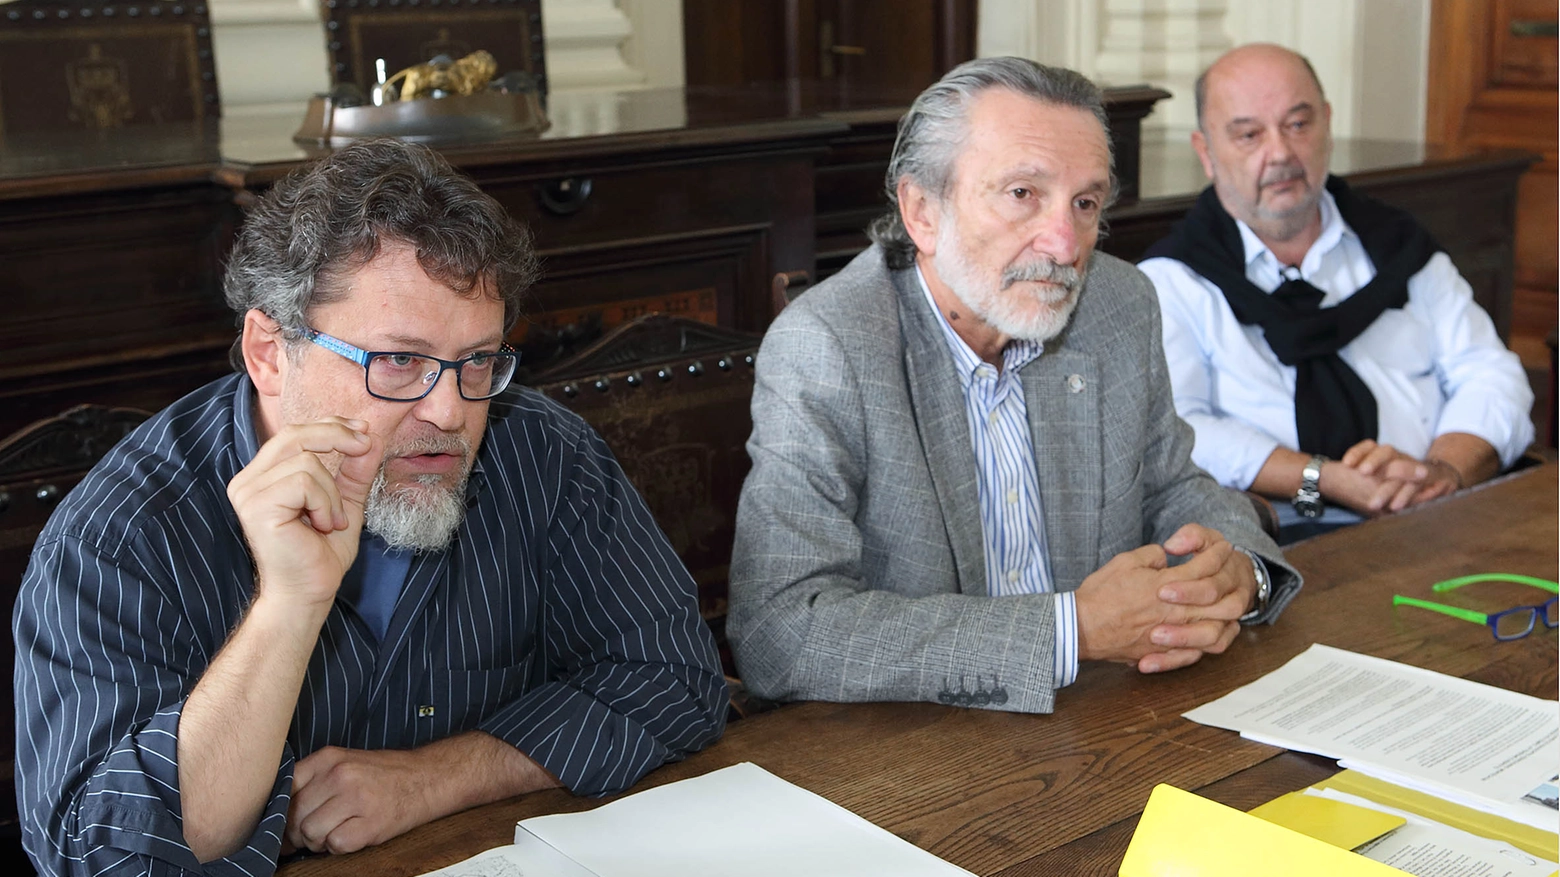 Da sinistra, il geologo De Martin Mazzalon, il sindaco Bellandi e il consigliere Morini